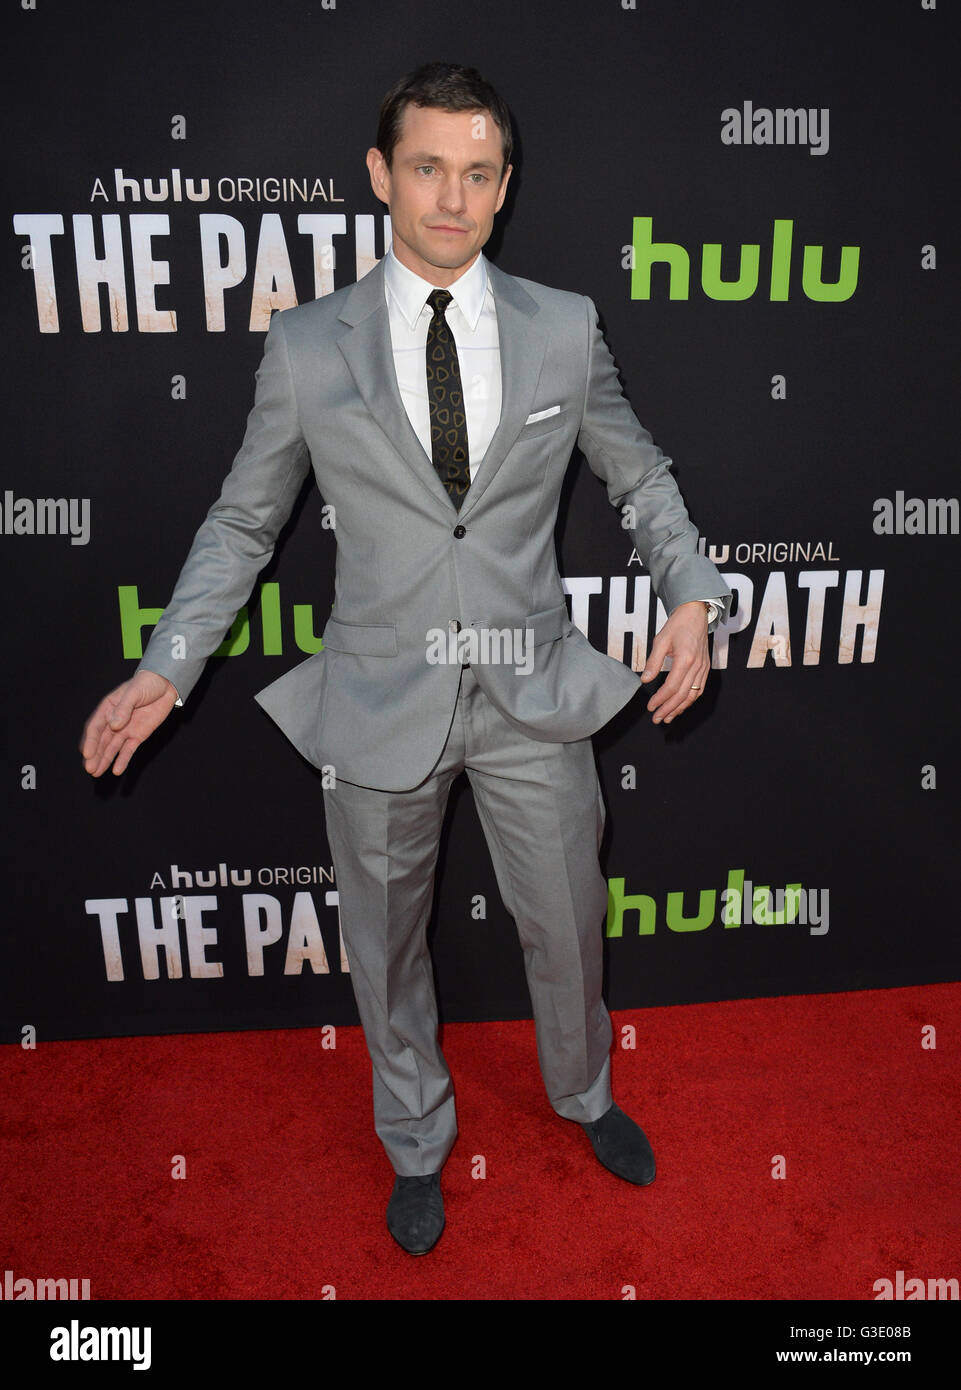 LOS ANGELES, CA - 21. März 2016: Schauspieler Hugh Dancy bei der Premiere für Hulu original TV-Serie "The Path' am Arclight Theater, Hollywood. Stockfoto